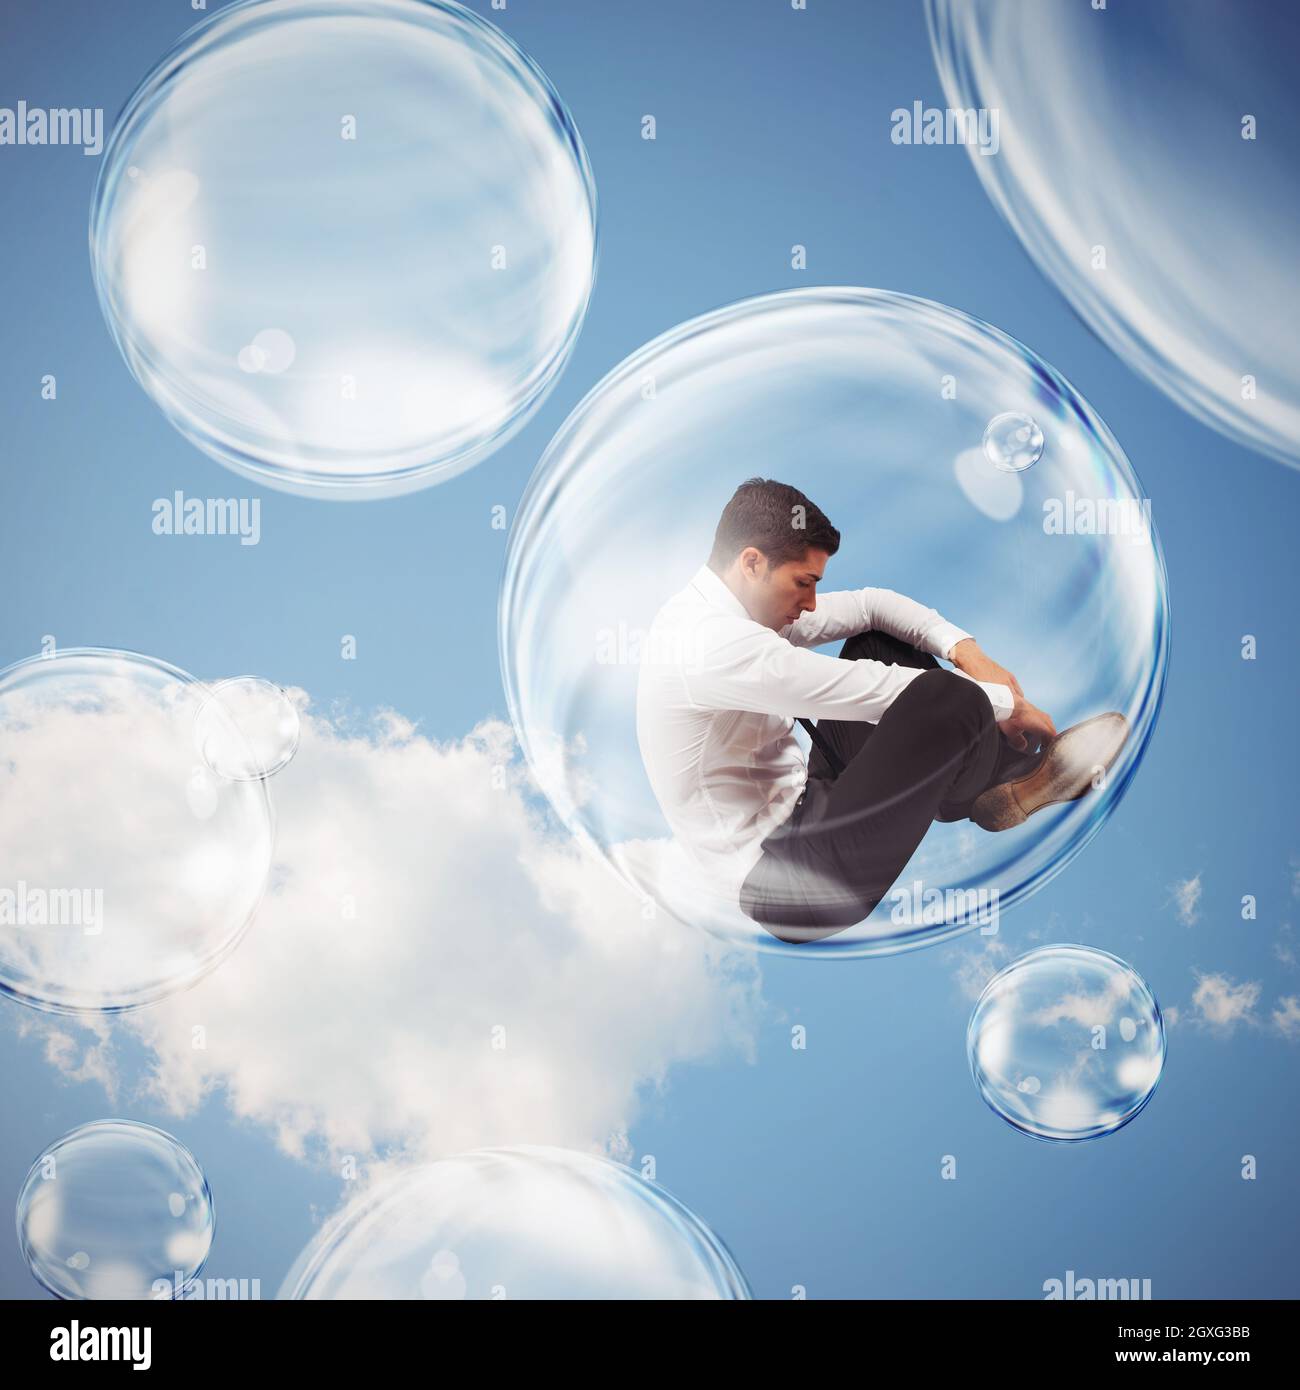 Un homme d'affaires triste vole dans une bulle et s'isole à l'intérieur d'une bulle du concept du monde extérieur Banque D'Images